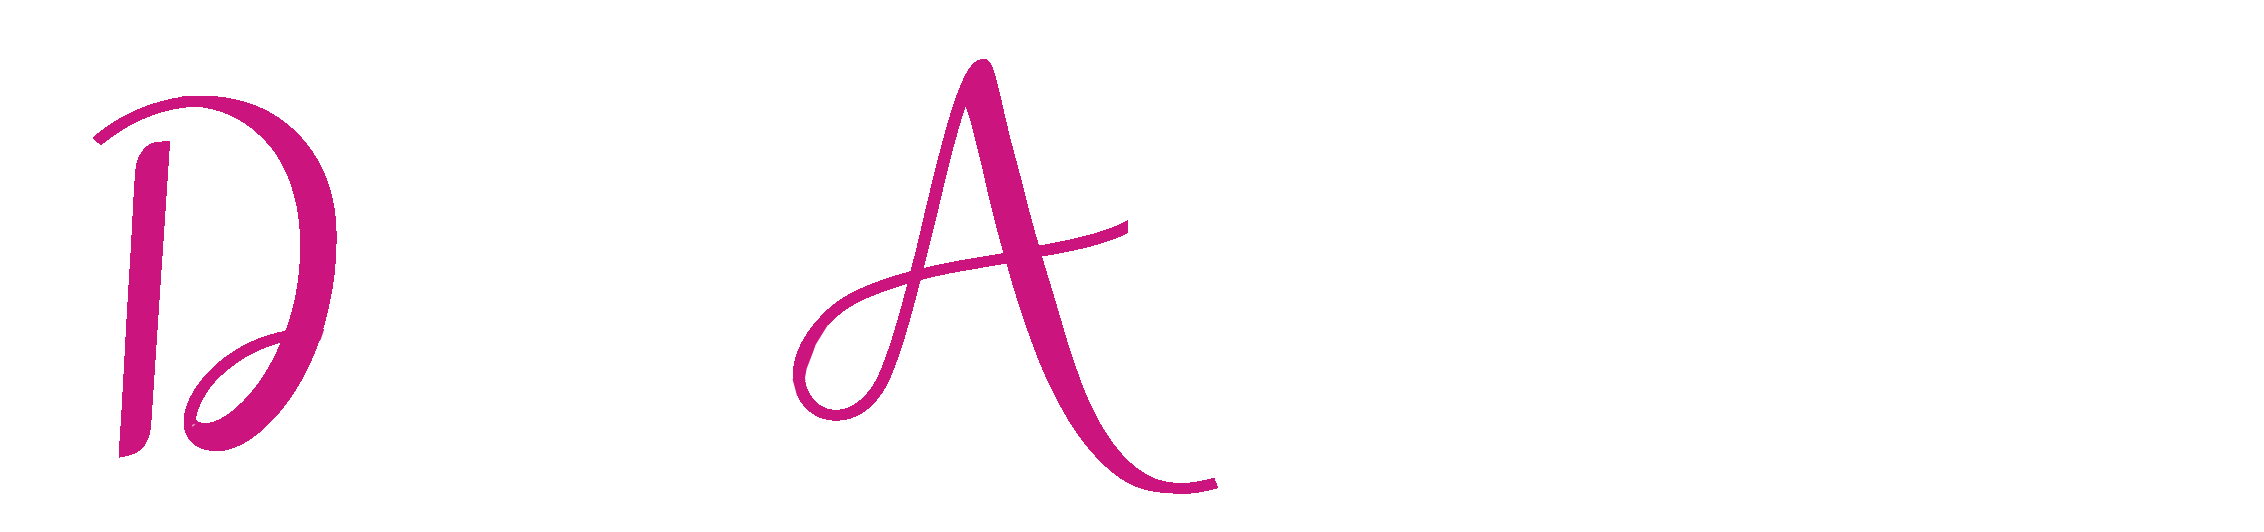 Dein Abibal Logo